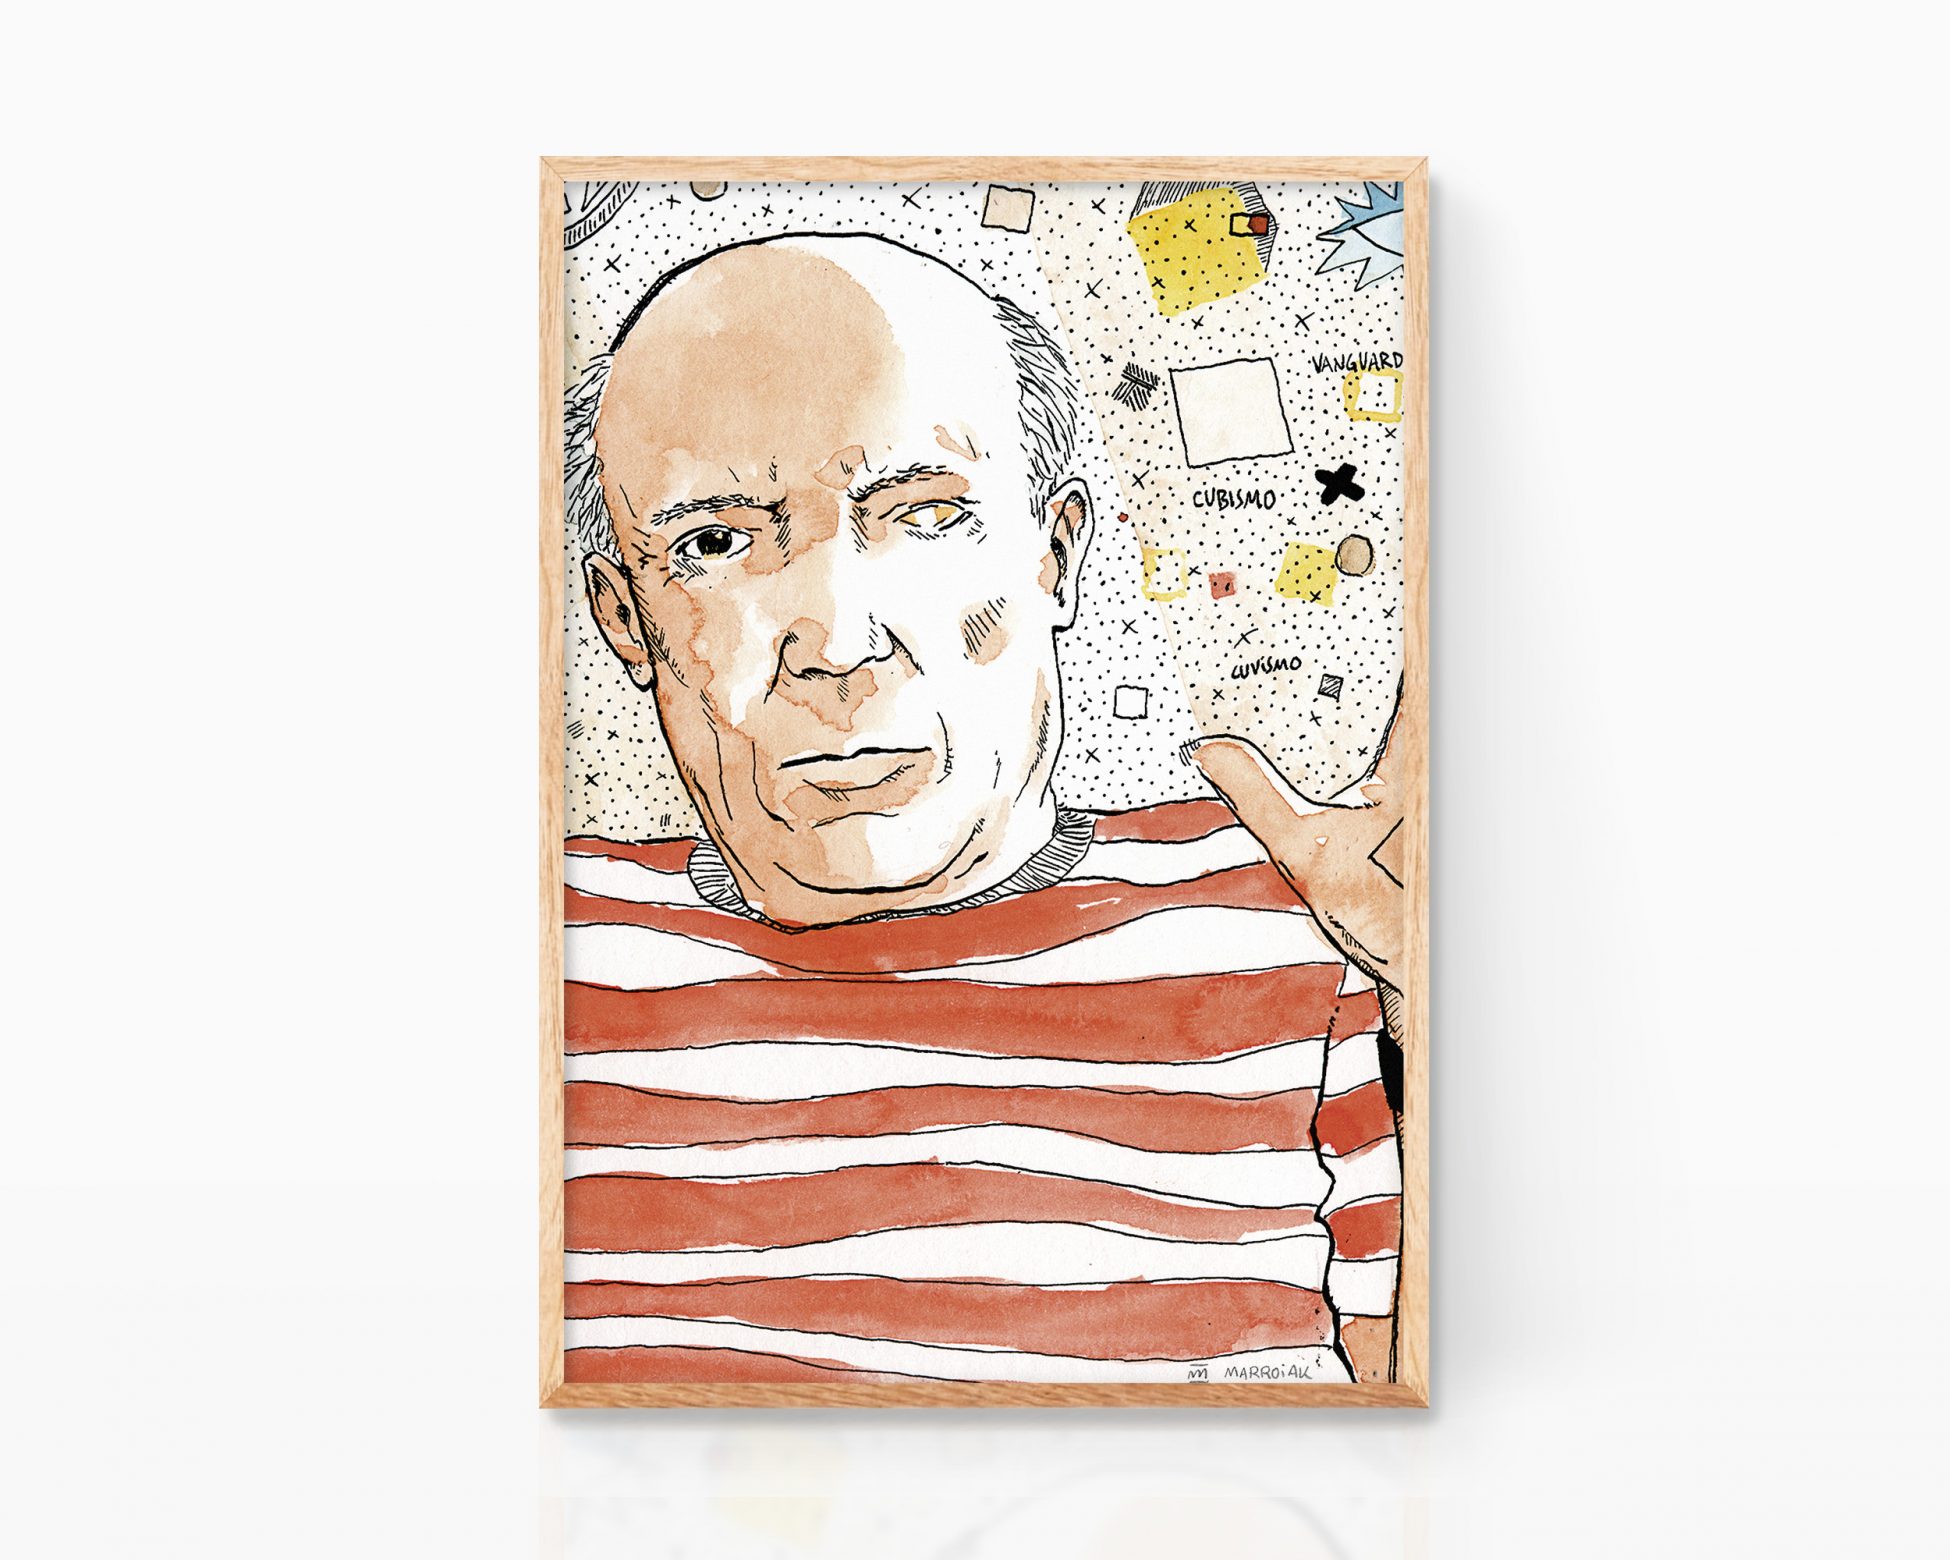 Retrato Pablo Picasso. Cuadro decorativo para enmarcar con una lámina e ilustración del pintor cubista malagueño. Artista de vanguardia español (y francés)